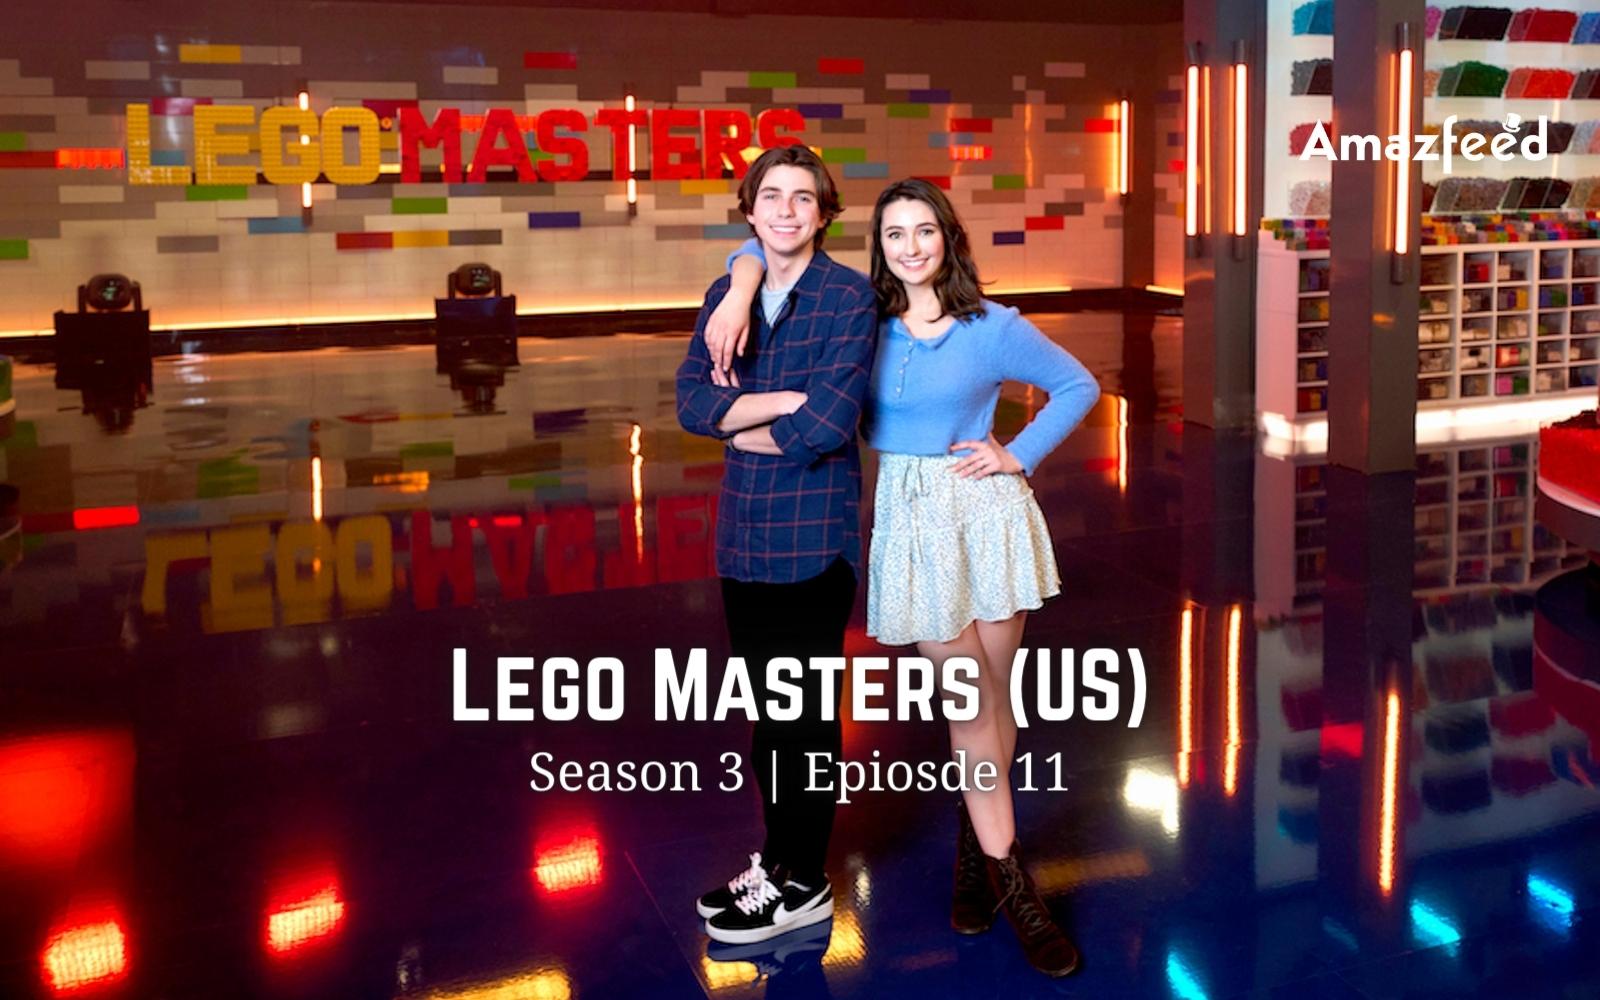 Lego Masters (US) Season 3 Episode 11